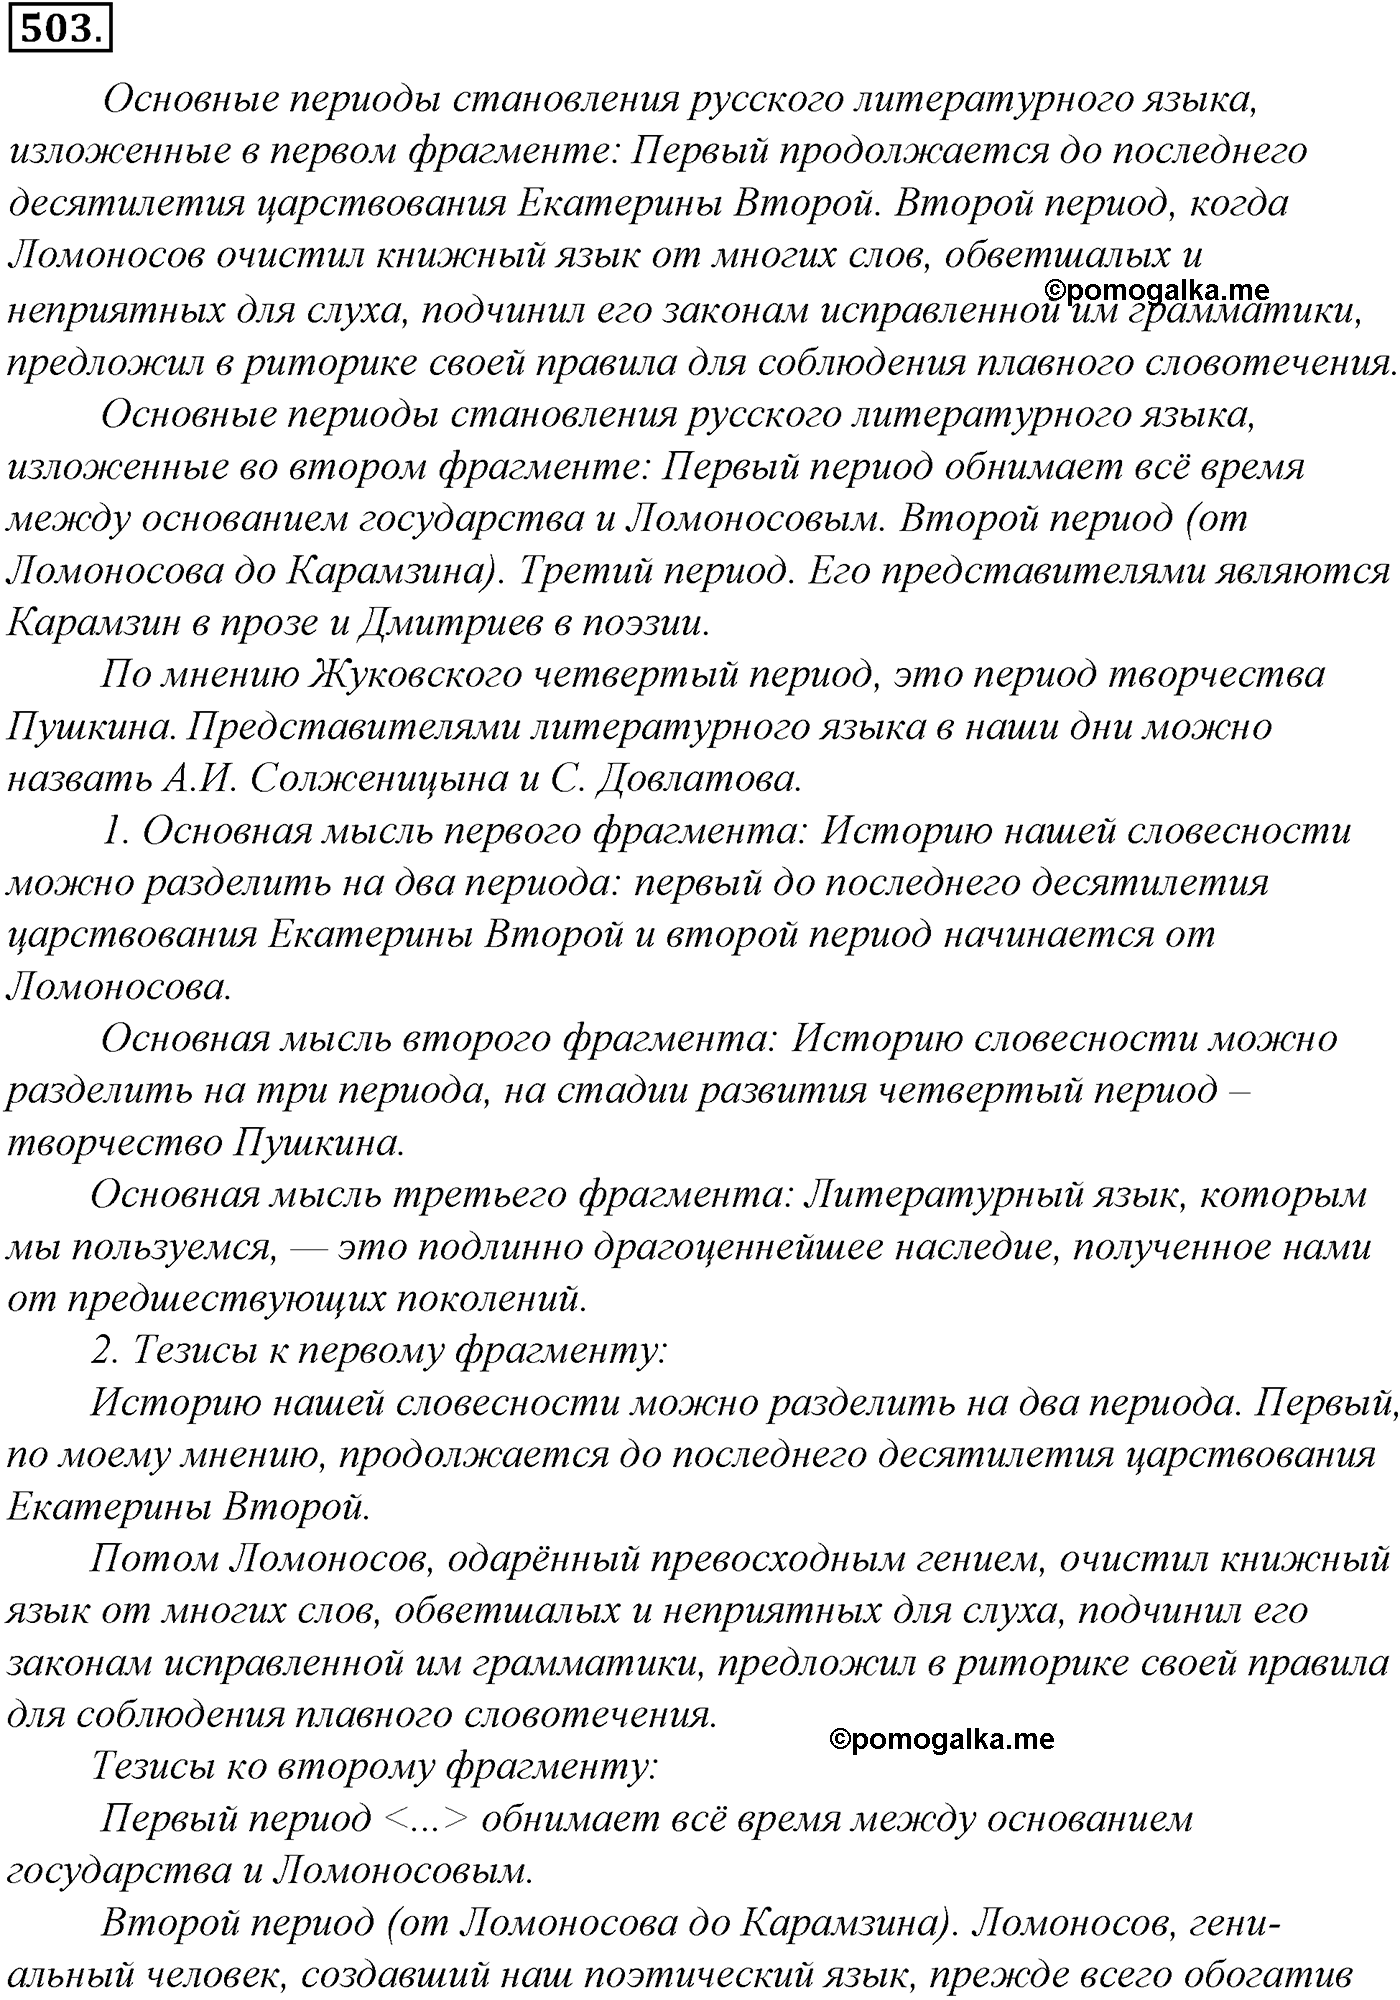 упражнение №503 русский язык 10-11 класс Гольцова